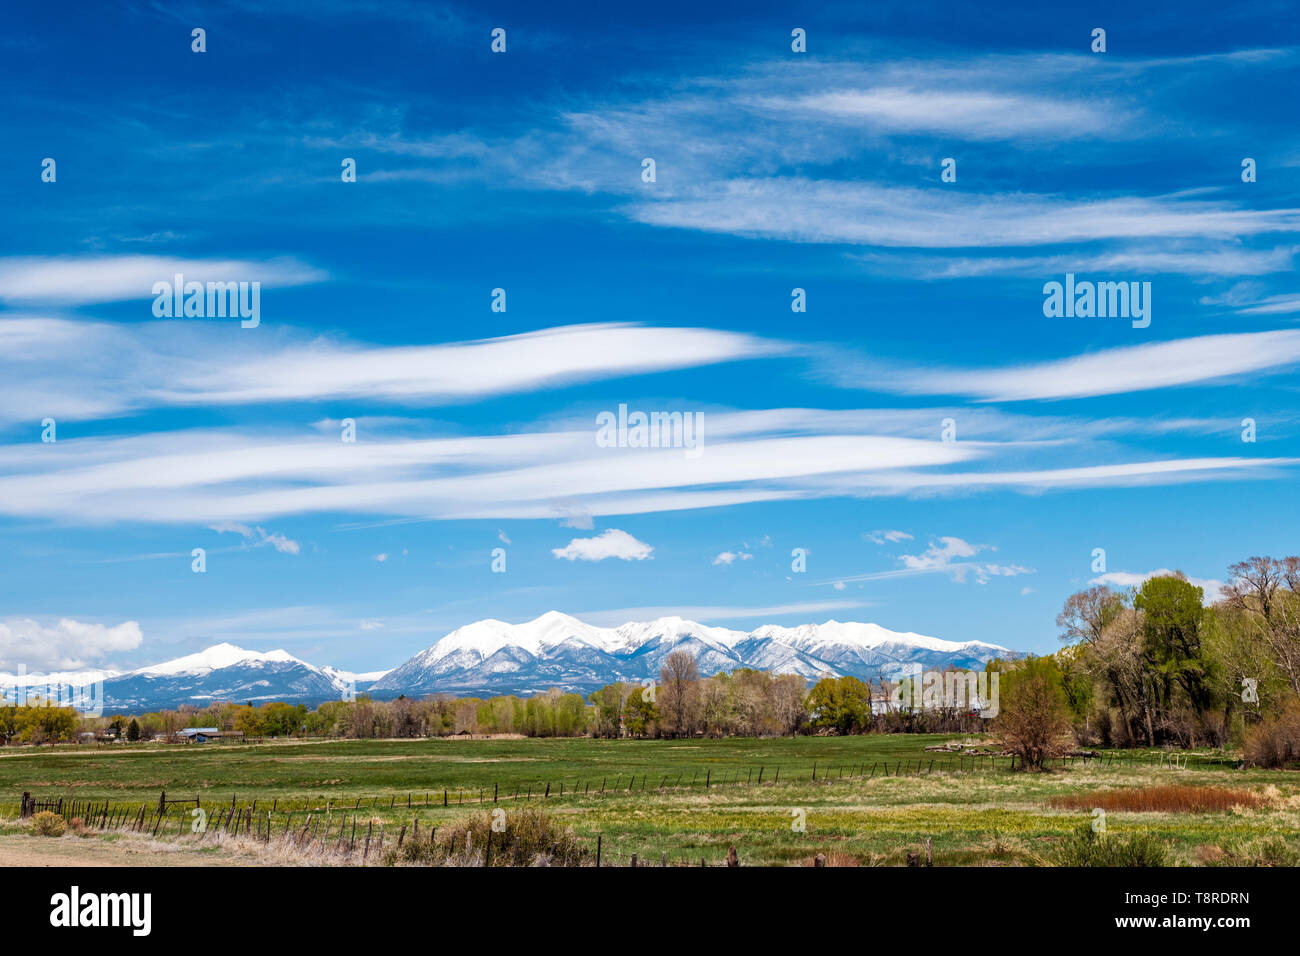 Schönen blauen Himmel mit Cirrus Wolken, schneebedeckten Rocky Mountains am Horizont; Vandaveer Ranch; Salida, Colorado, USA Stockfoto